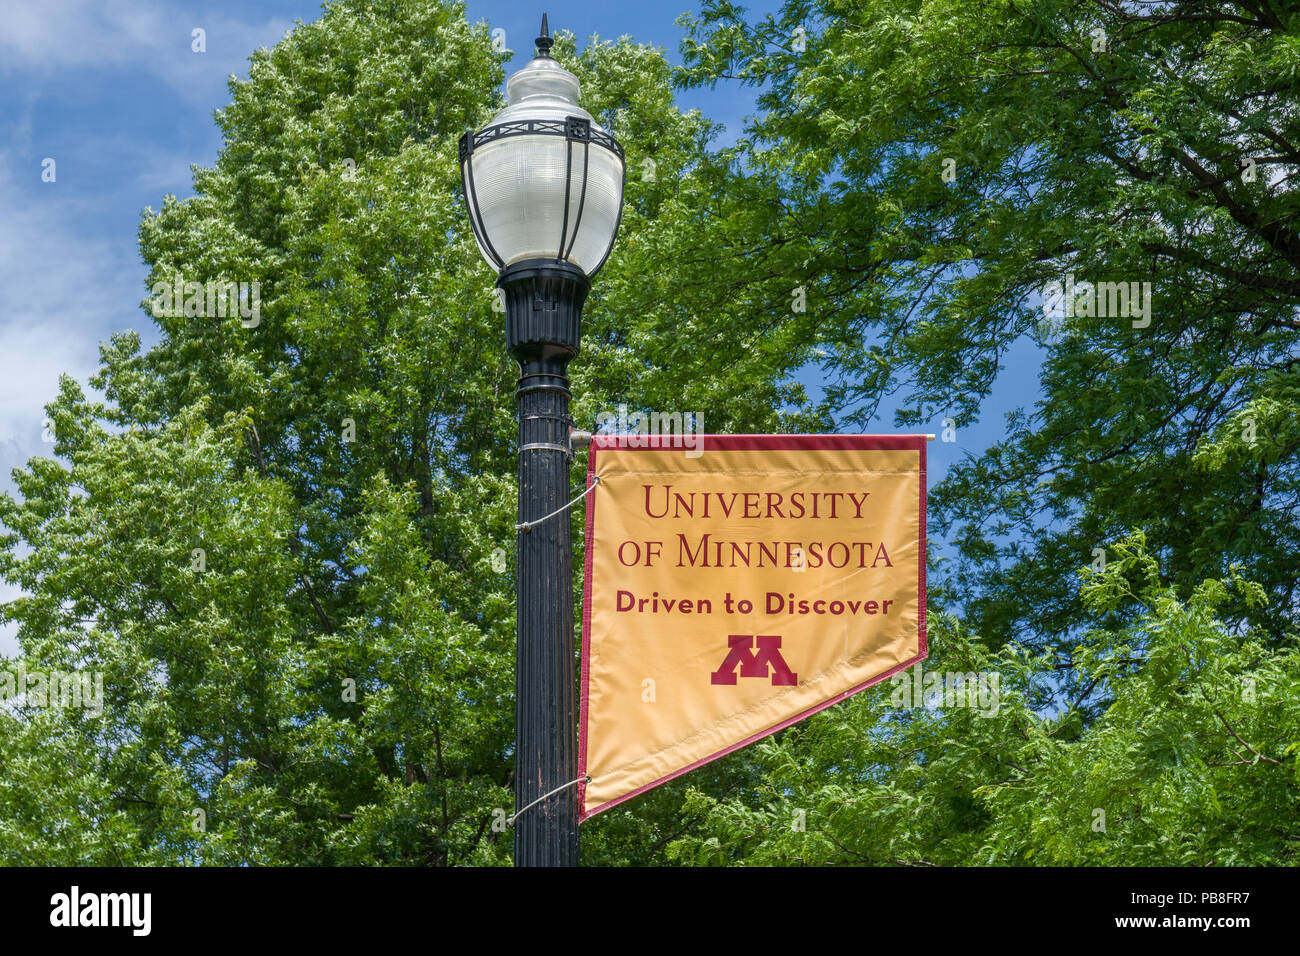 MINNEAPOLIS, MN/USA - 28. JUNI 2018: Campus Farben und Wappen auf dem Campus der Universität von Minnesota. Stockfoto